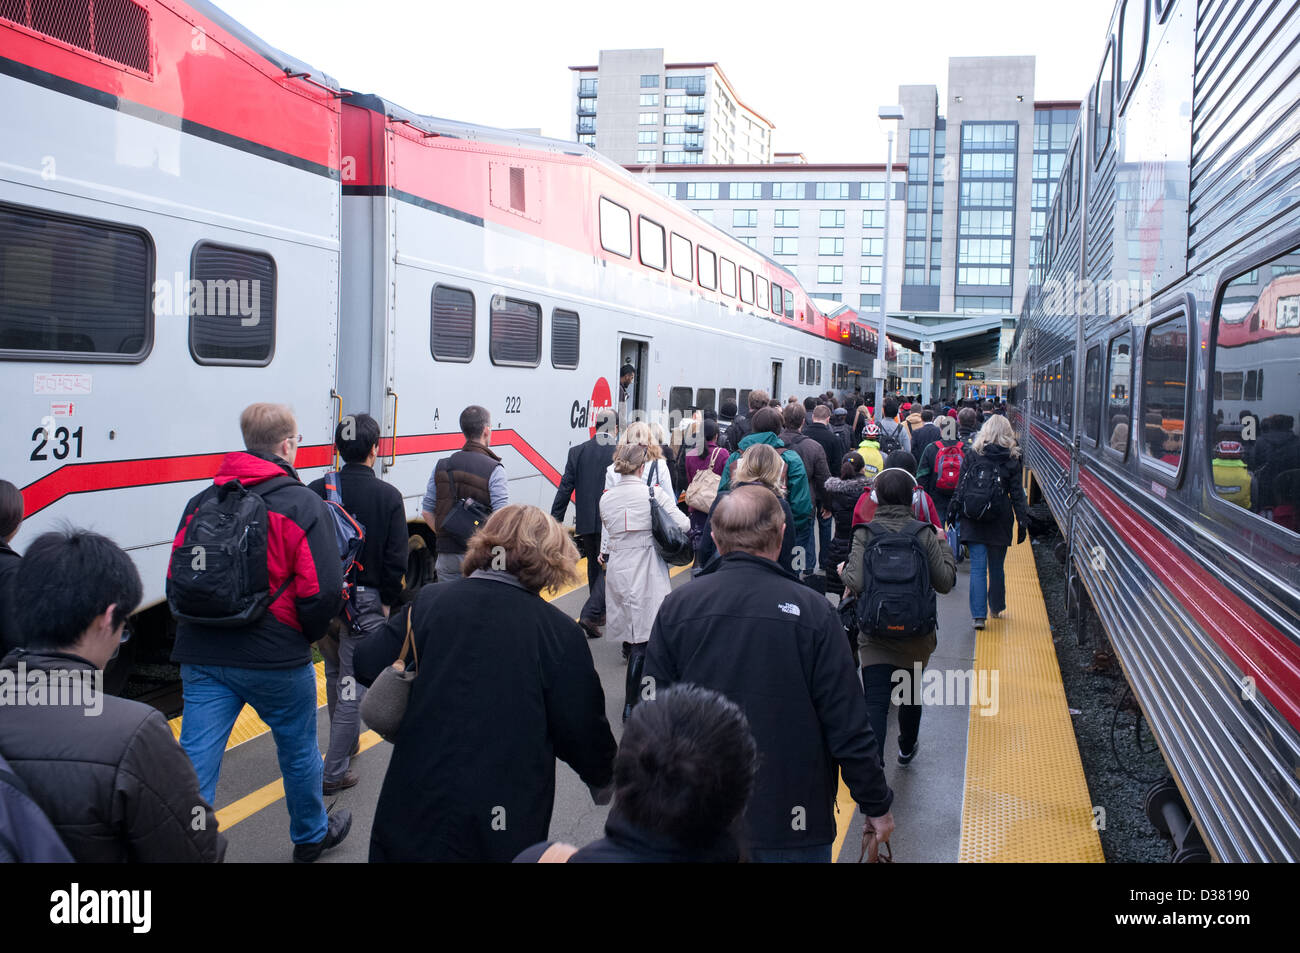 Scene of the CalTrain Peninsula commuter train operation. Stock Photo